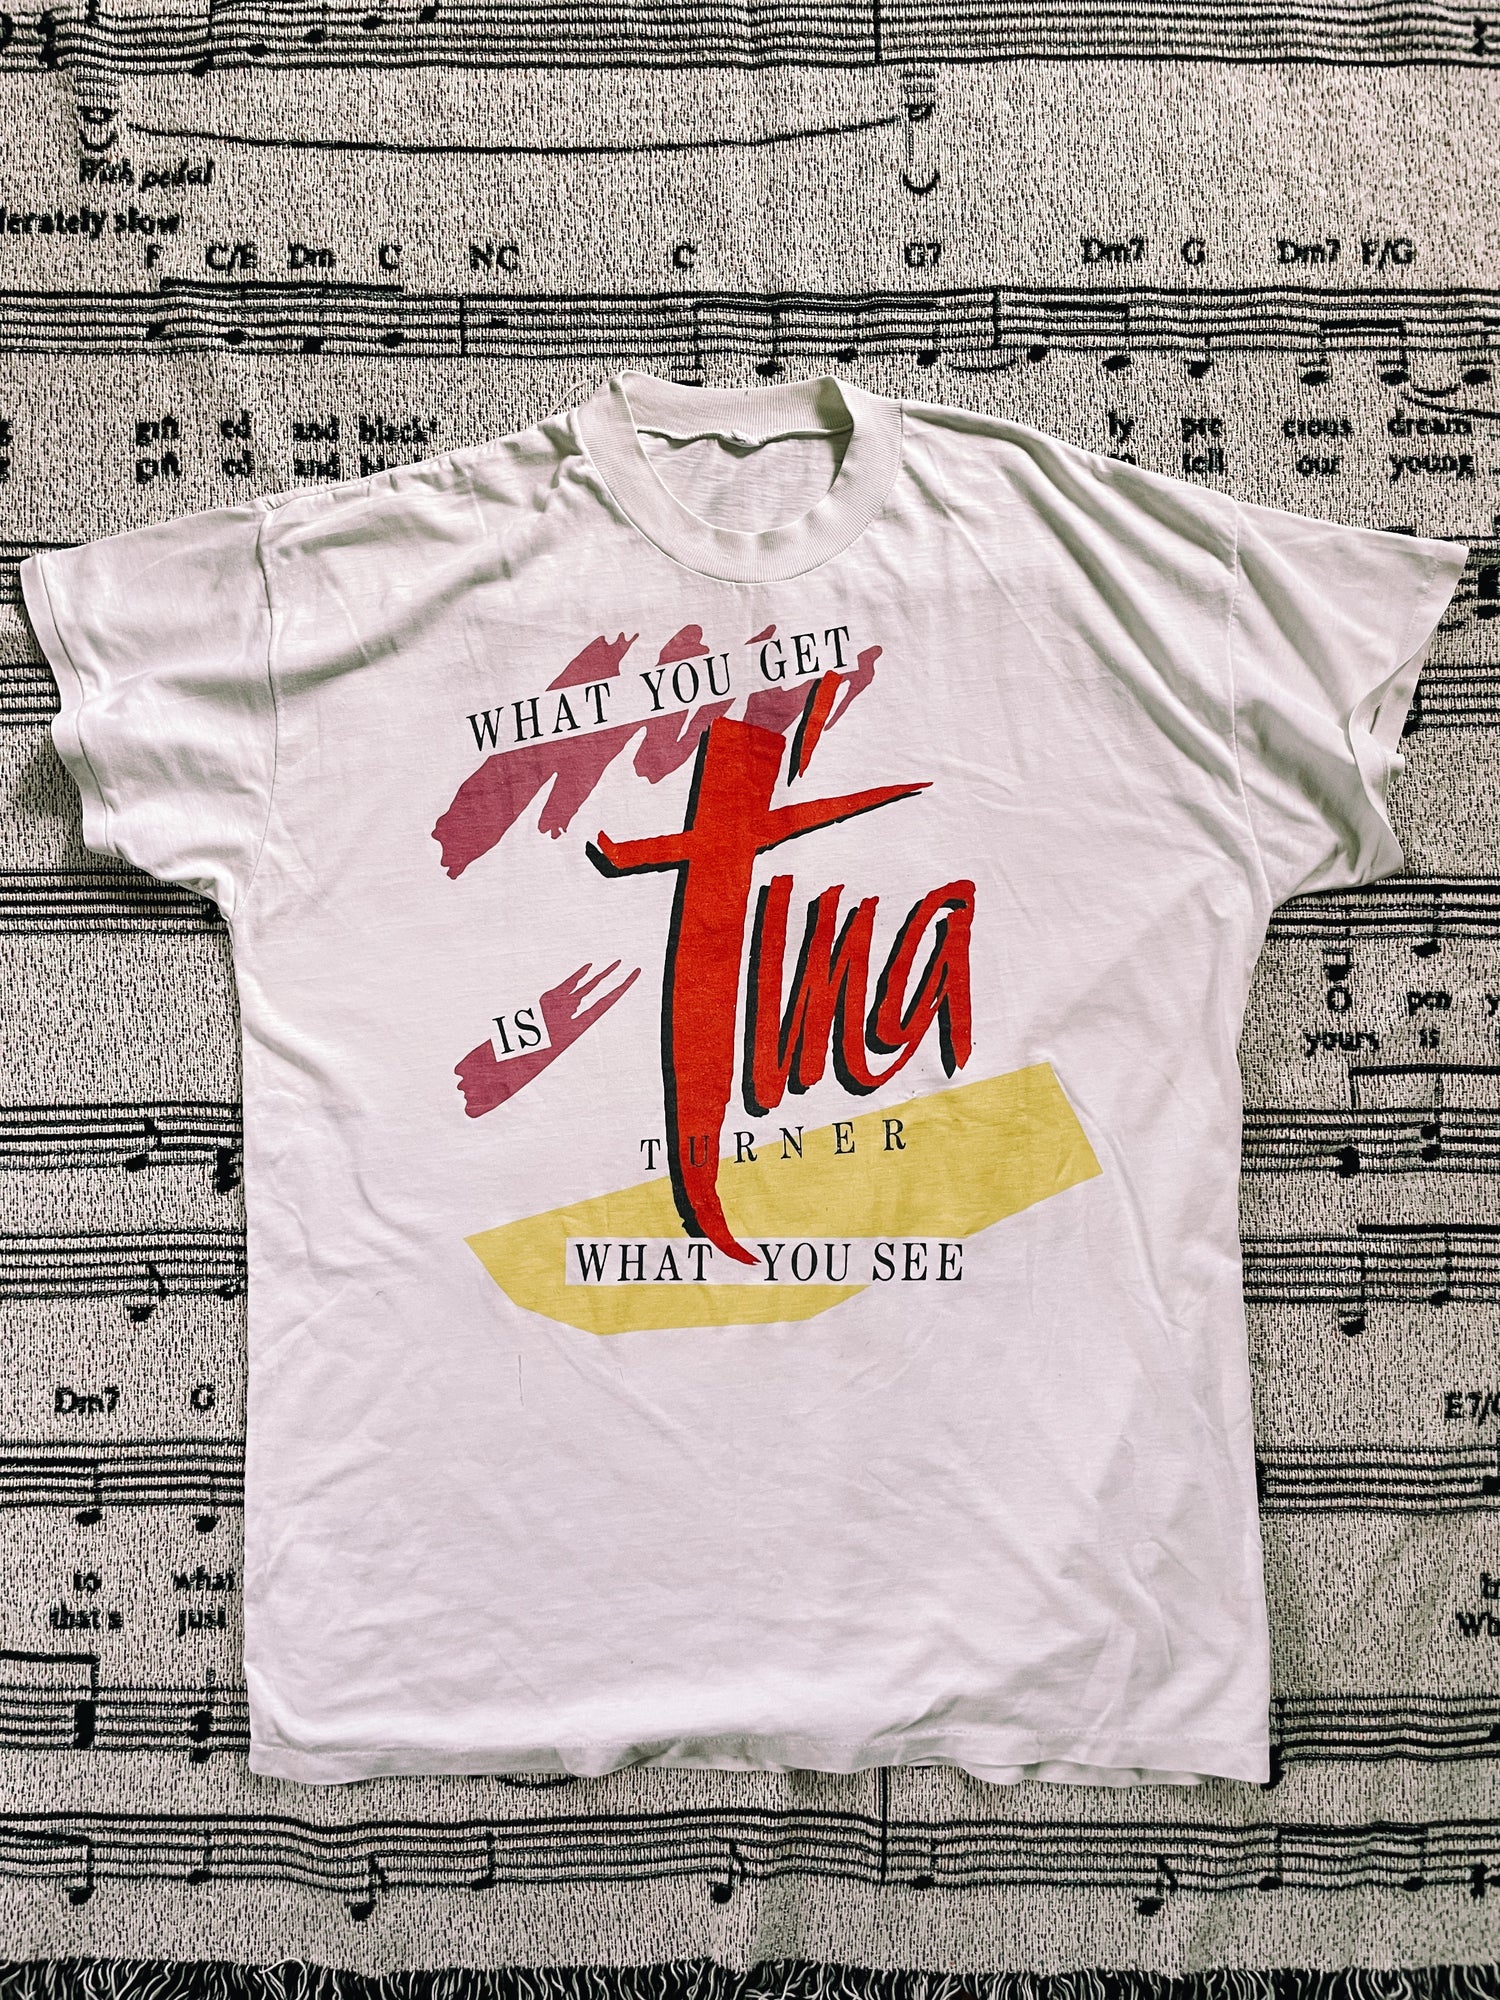 Vintage “Tina Turner” Concert T-Shirt (1986)